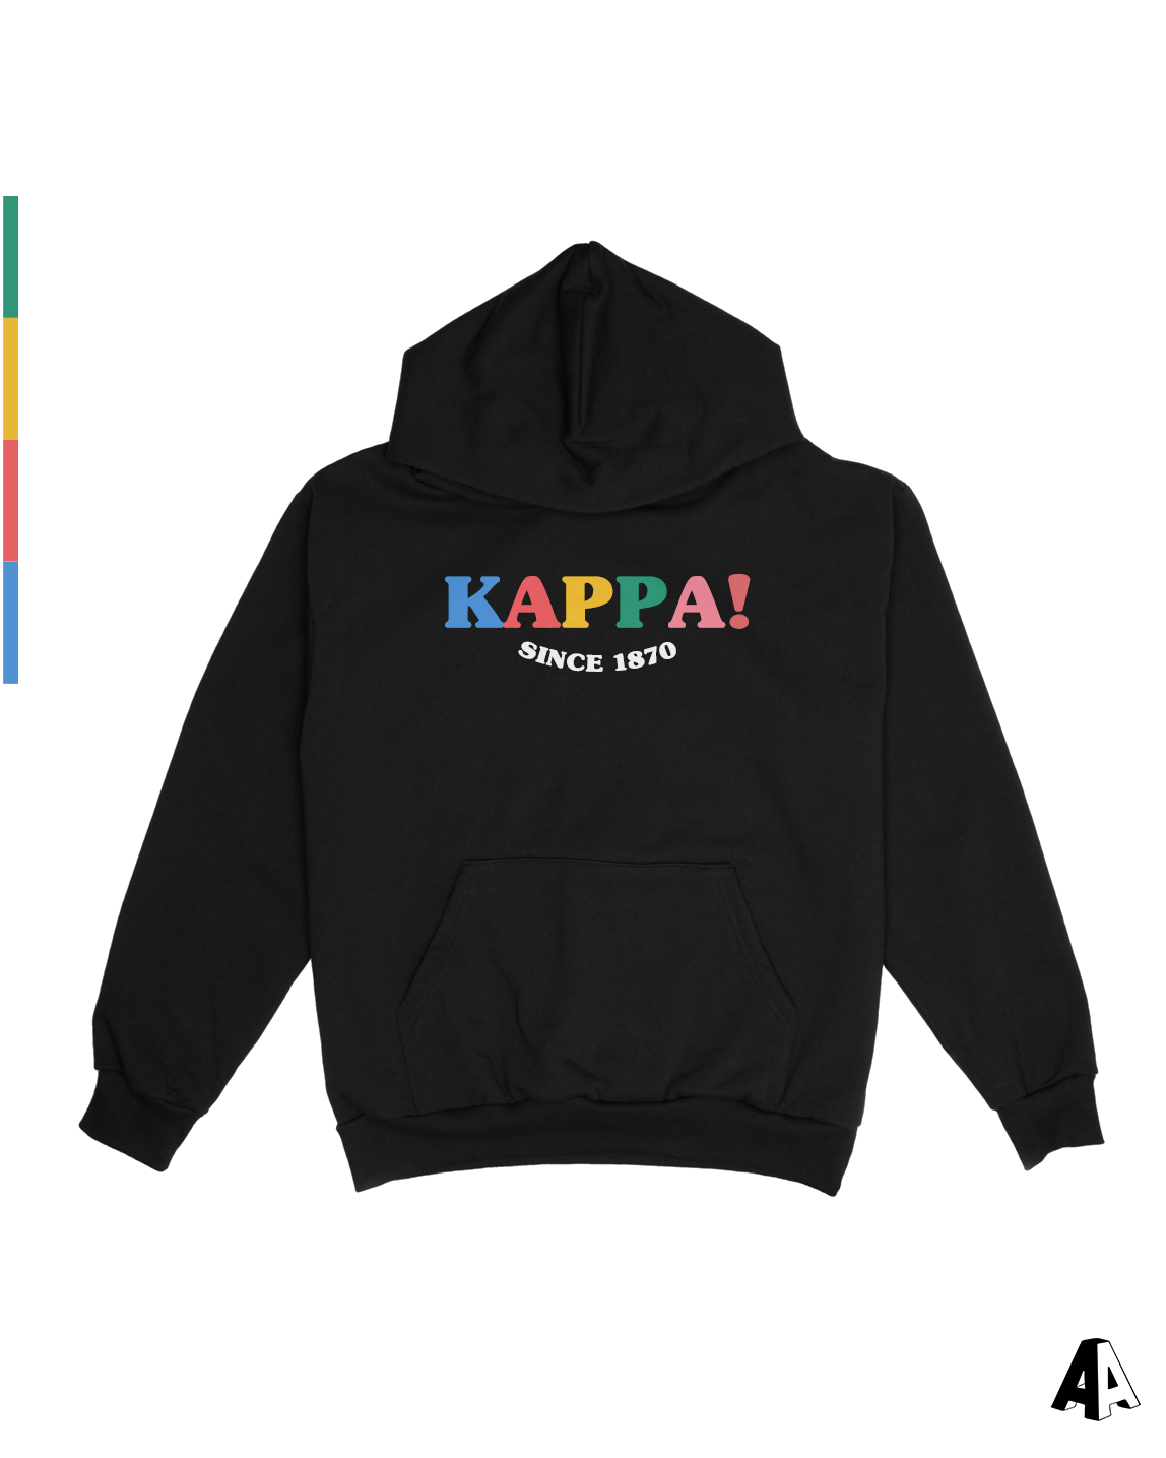 Happy! Hoodie Kappa Kappa Gamma